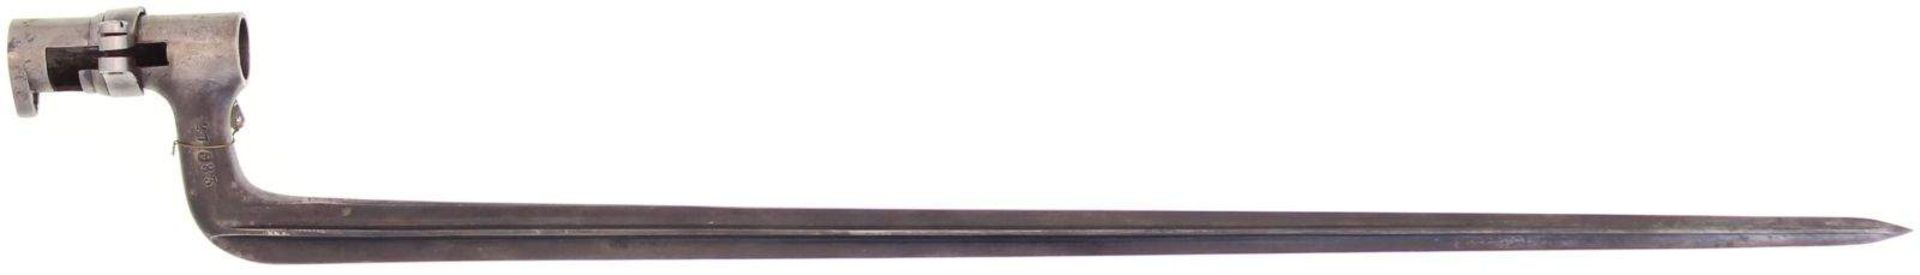 Bajonett eidg. Ord. 1863/71, Stahl bronziert, vierkantklinge, Tülle mit Schraubzwinge, Waffennr.